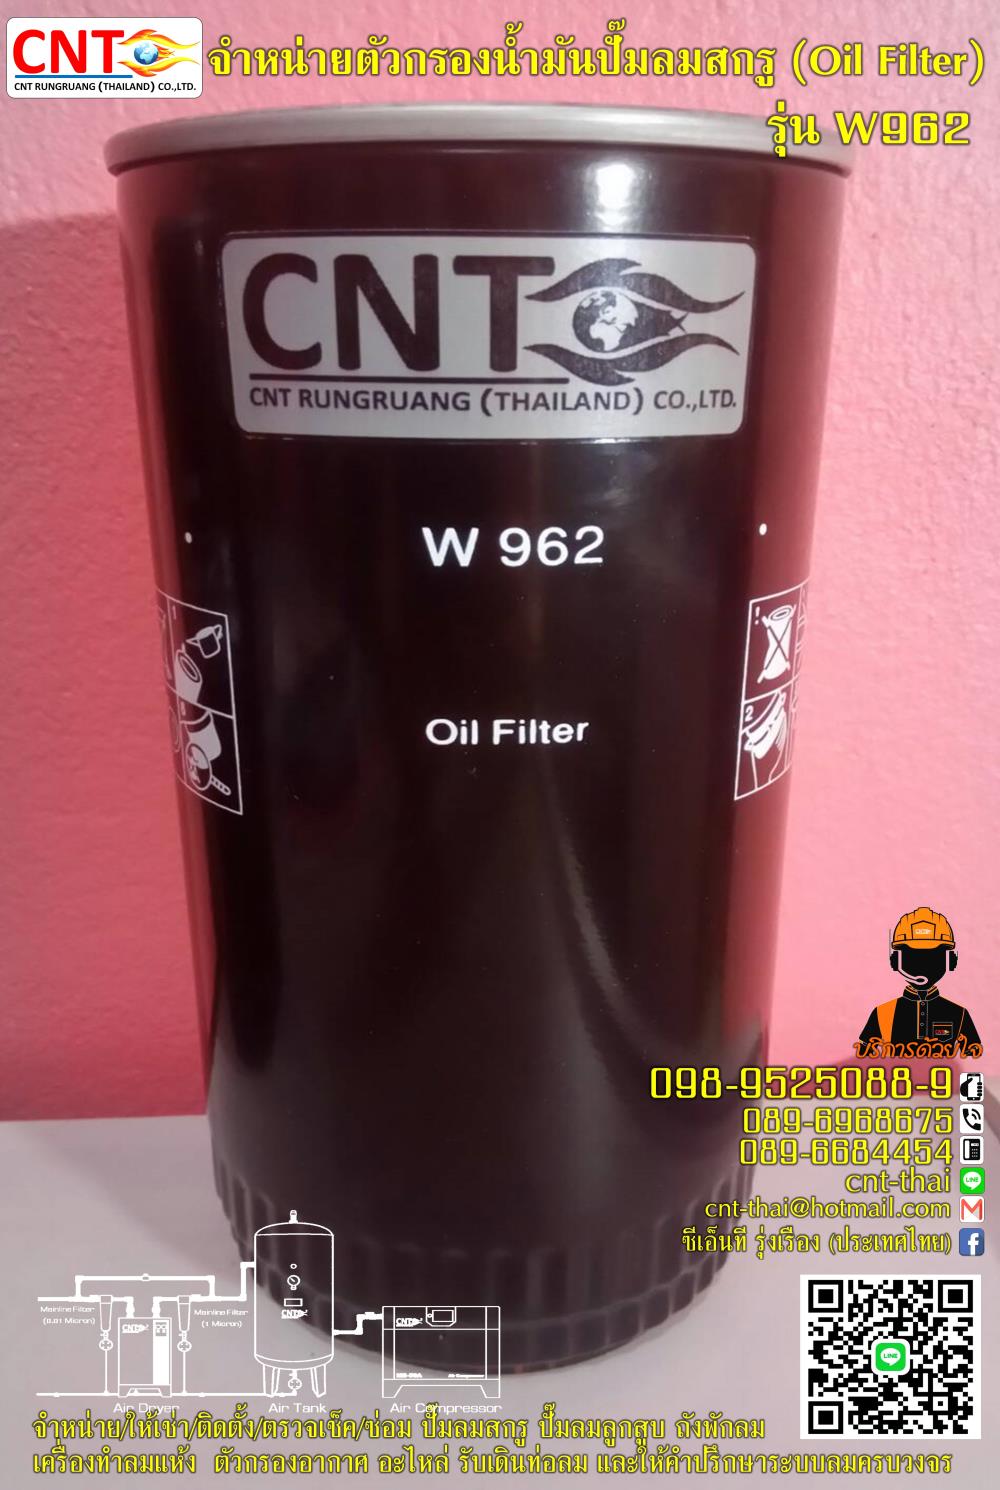 ตัวกรองน้ำมัน (Oil Filter) รุ่น W500-W115762,จำหน่ายตัวกรองน้ำมัน (Oil Filter) รุ่น W 500-W 115762,CNT,Pumps, Valves and Accessories/Pumps/Air Pumps